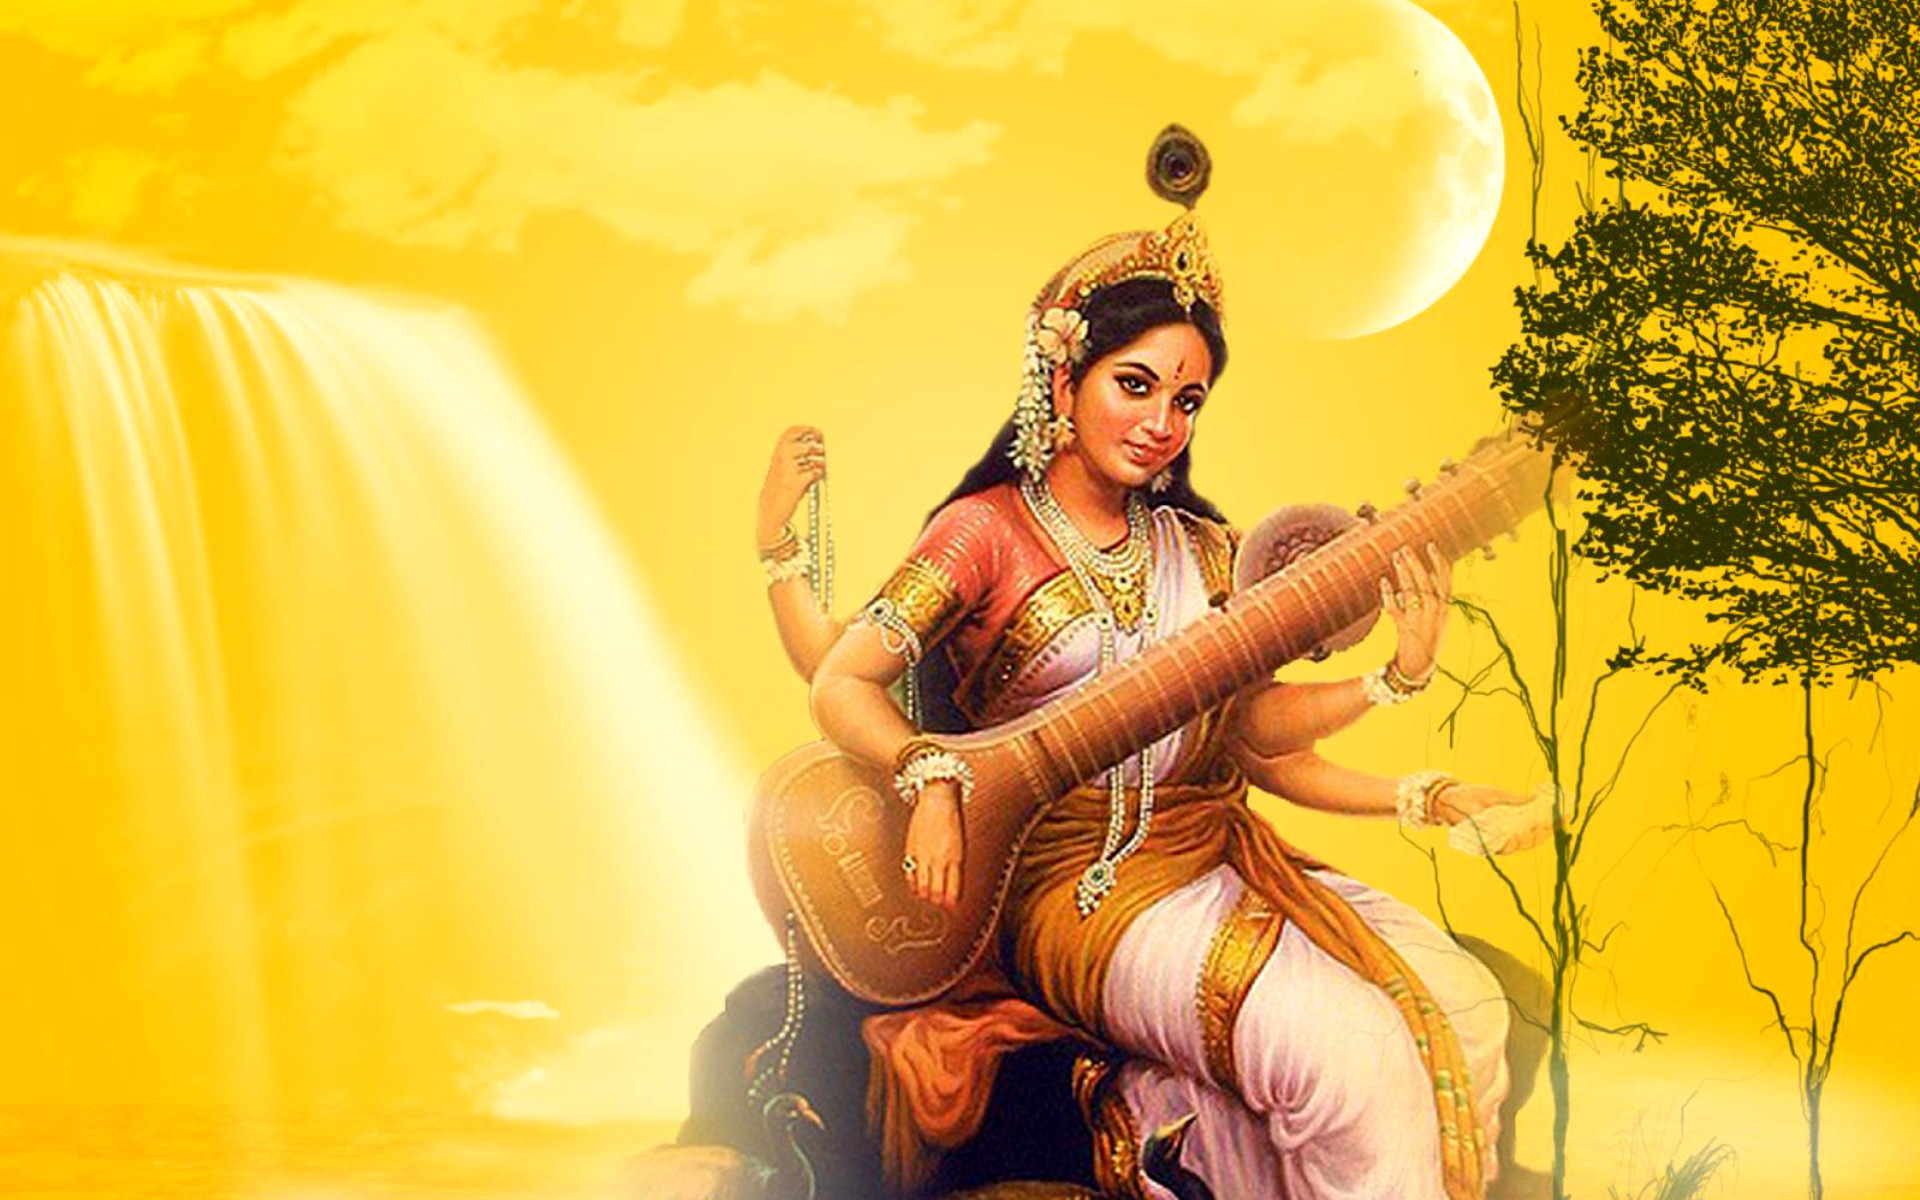 Hd Hindu God Desktop Wallpaper 44 Images